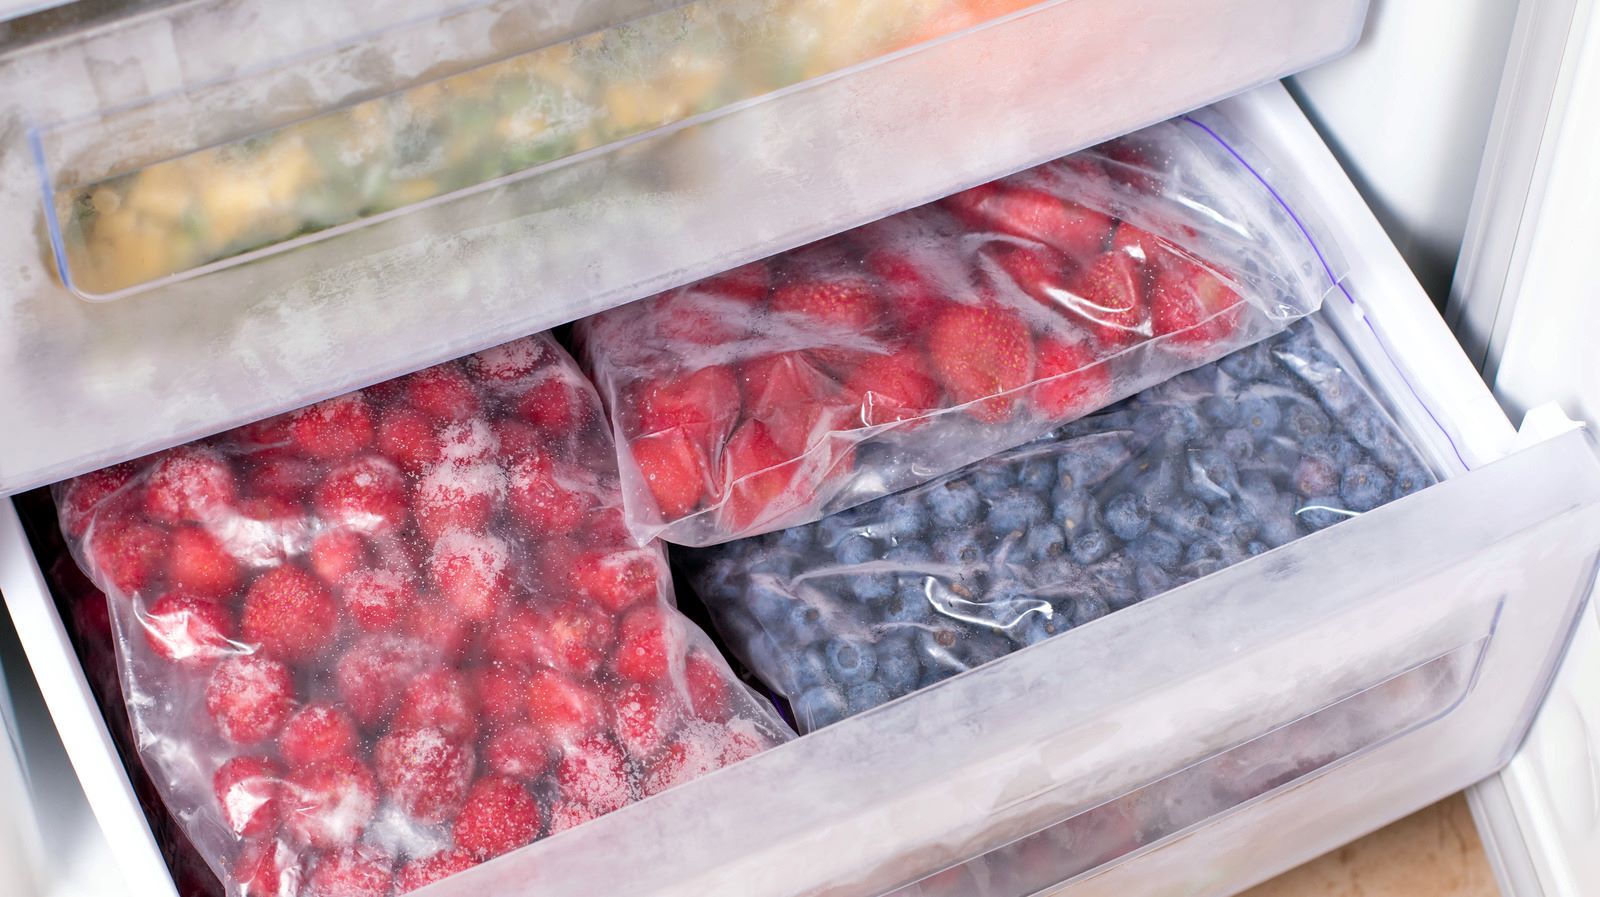 How To Store Frozen Fruit In Freezer